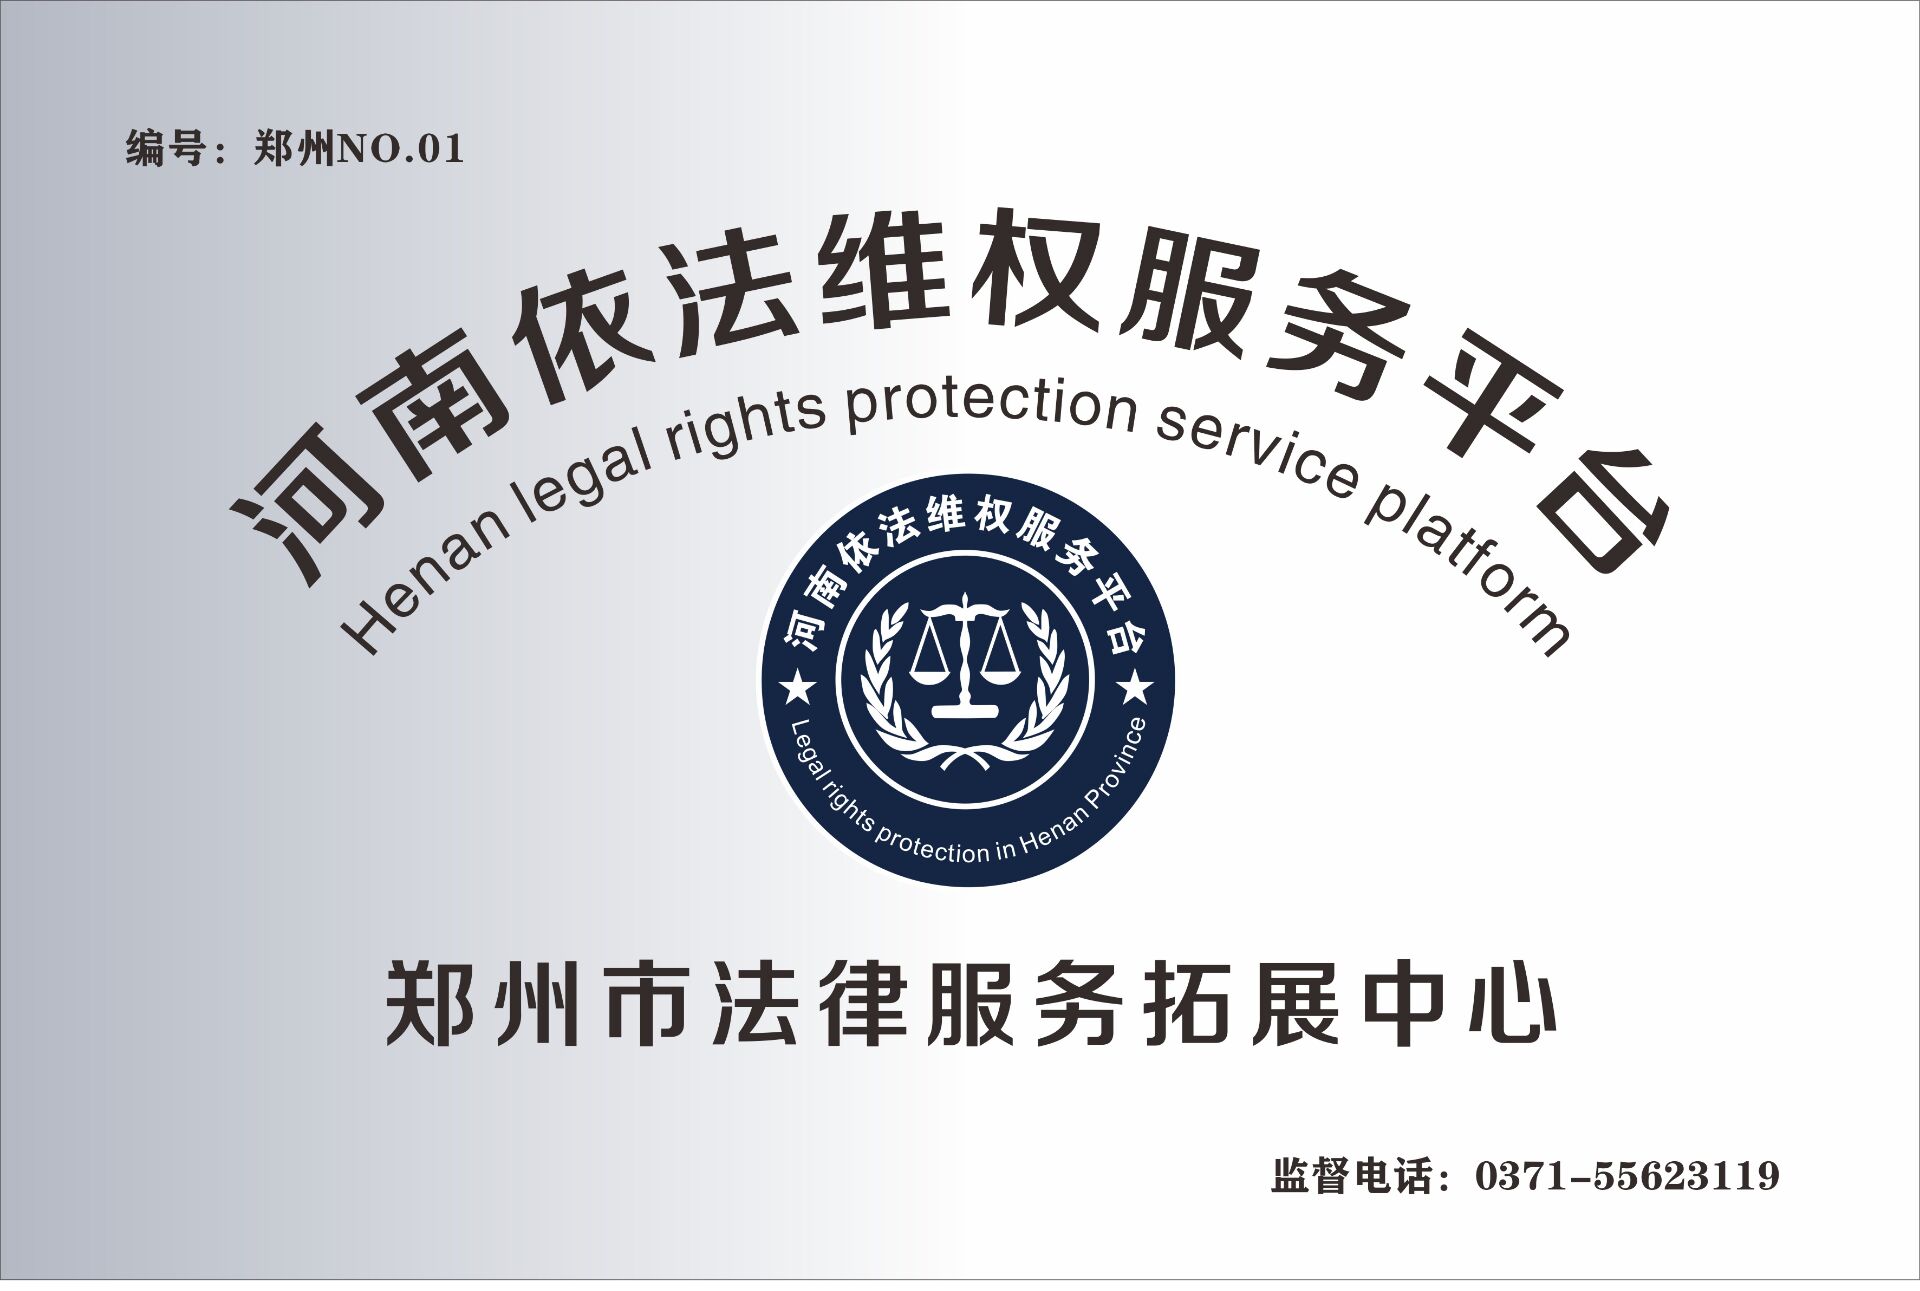 郑州市法律服务拓展中心